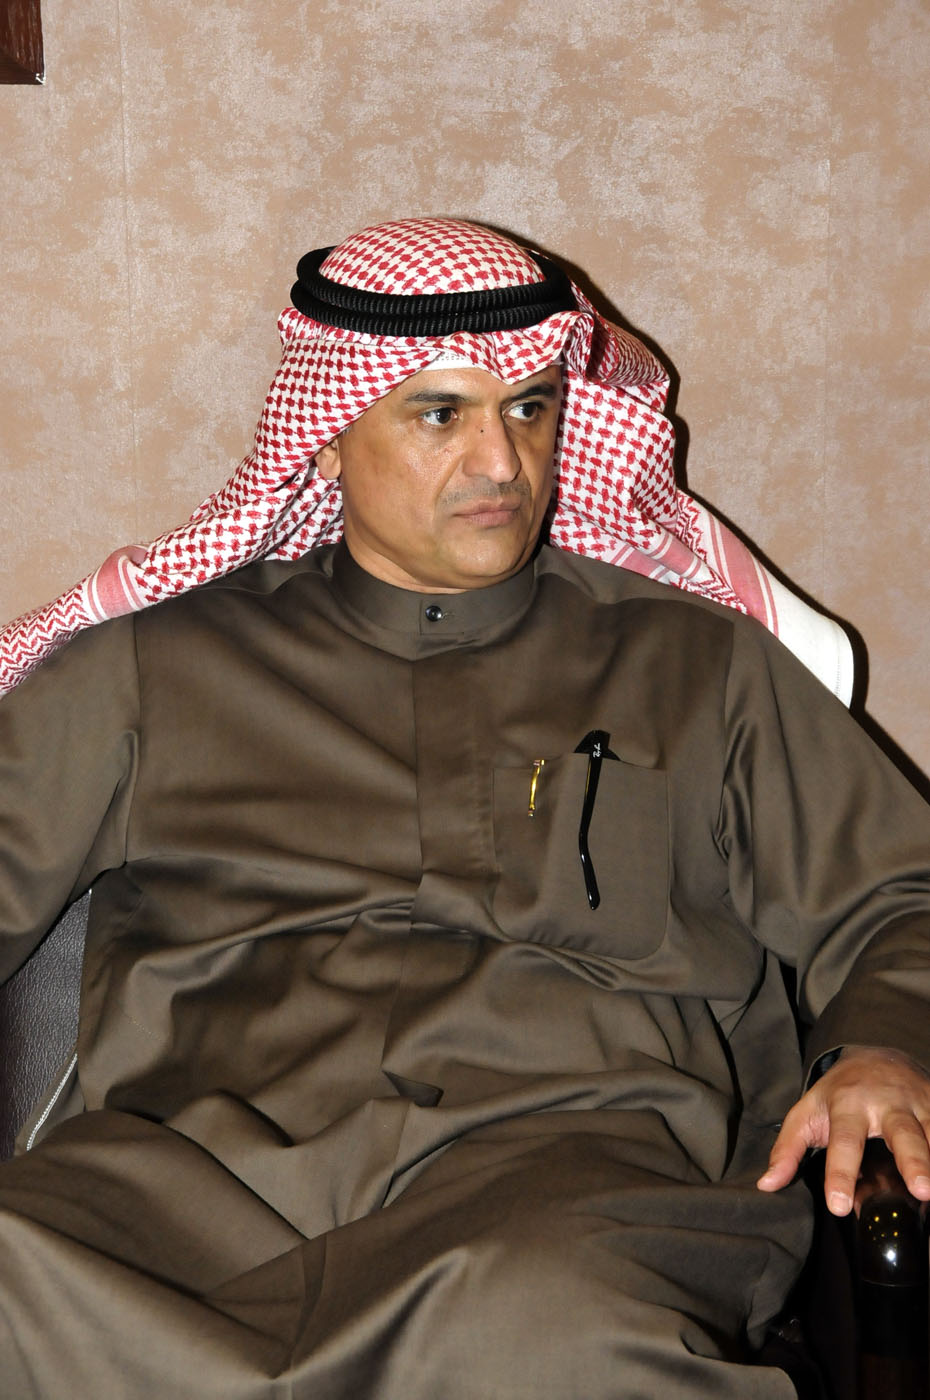 Kuwait's Ambassador to Cambodia Dhrar Al-Tuwaijri